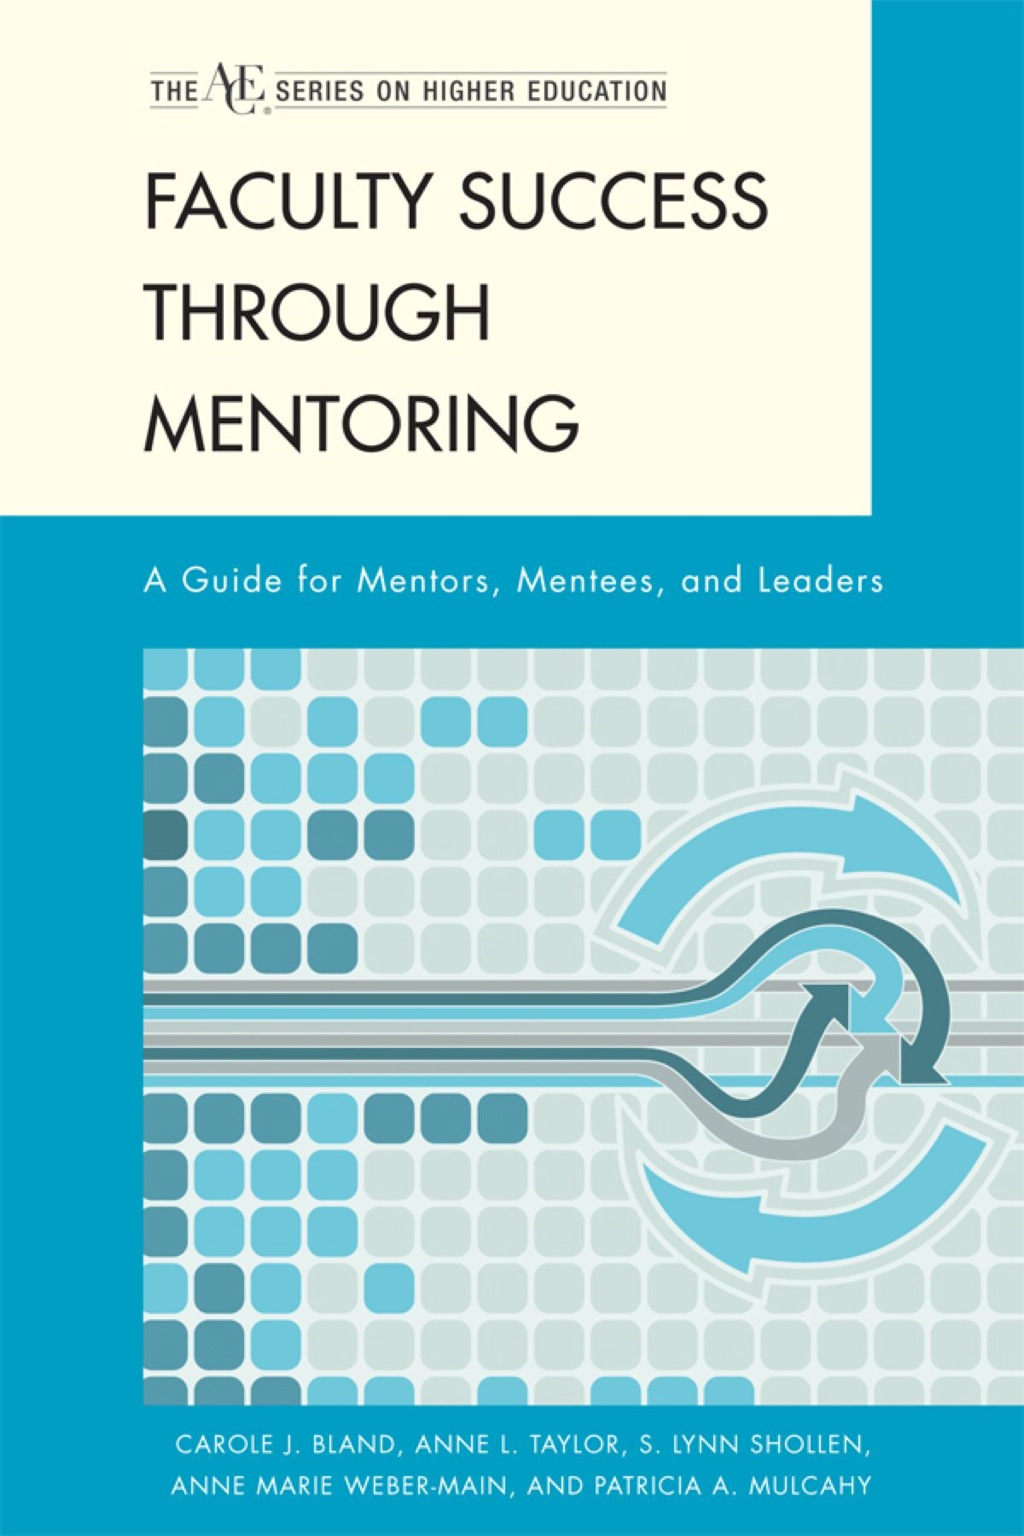 Faculty Success through Mentoring (eBook) - Carole J. Bland; Anne L. Taylor; S. Lynn Shollen; Anne Marie Weber-Main; Patricia A. Mulcahy,